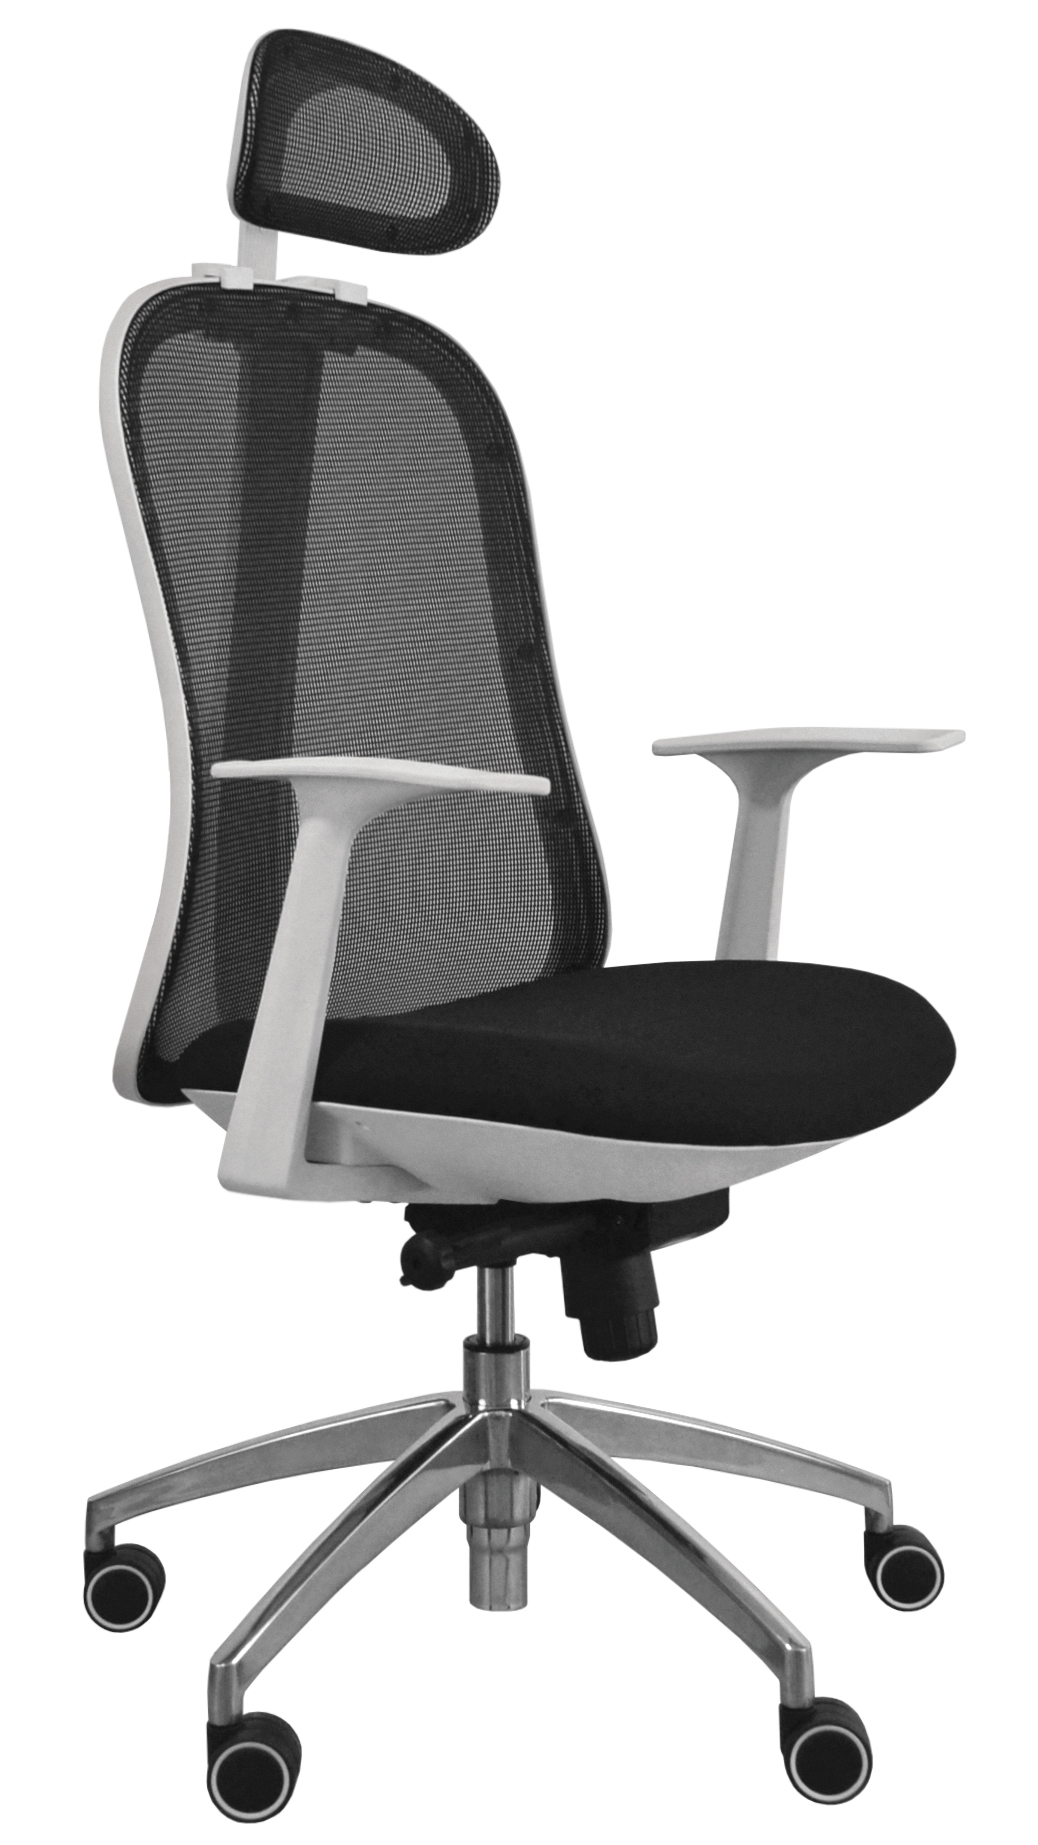 Kancelářská židle - Libra High W - Bílý plast